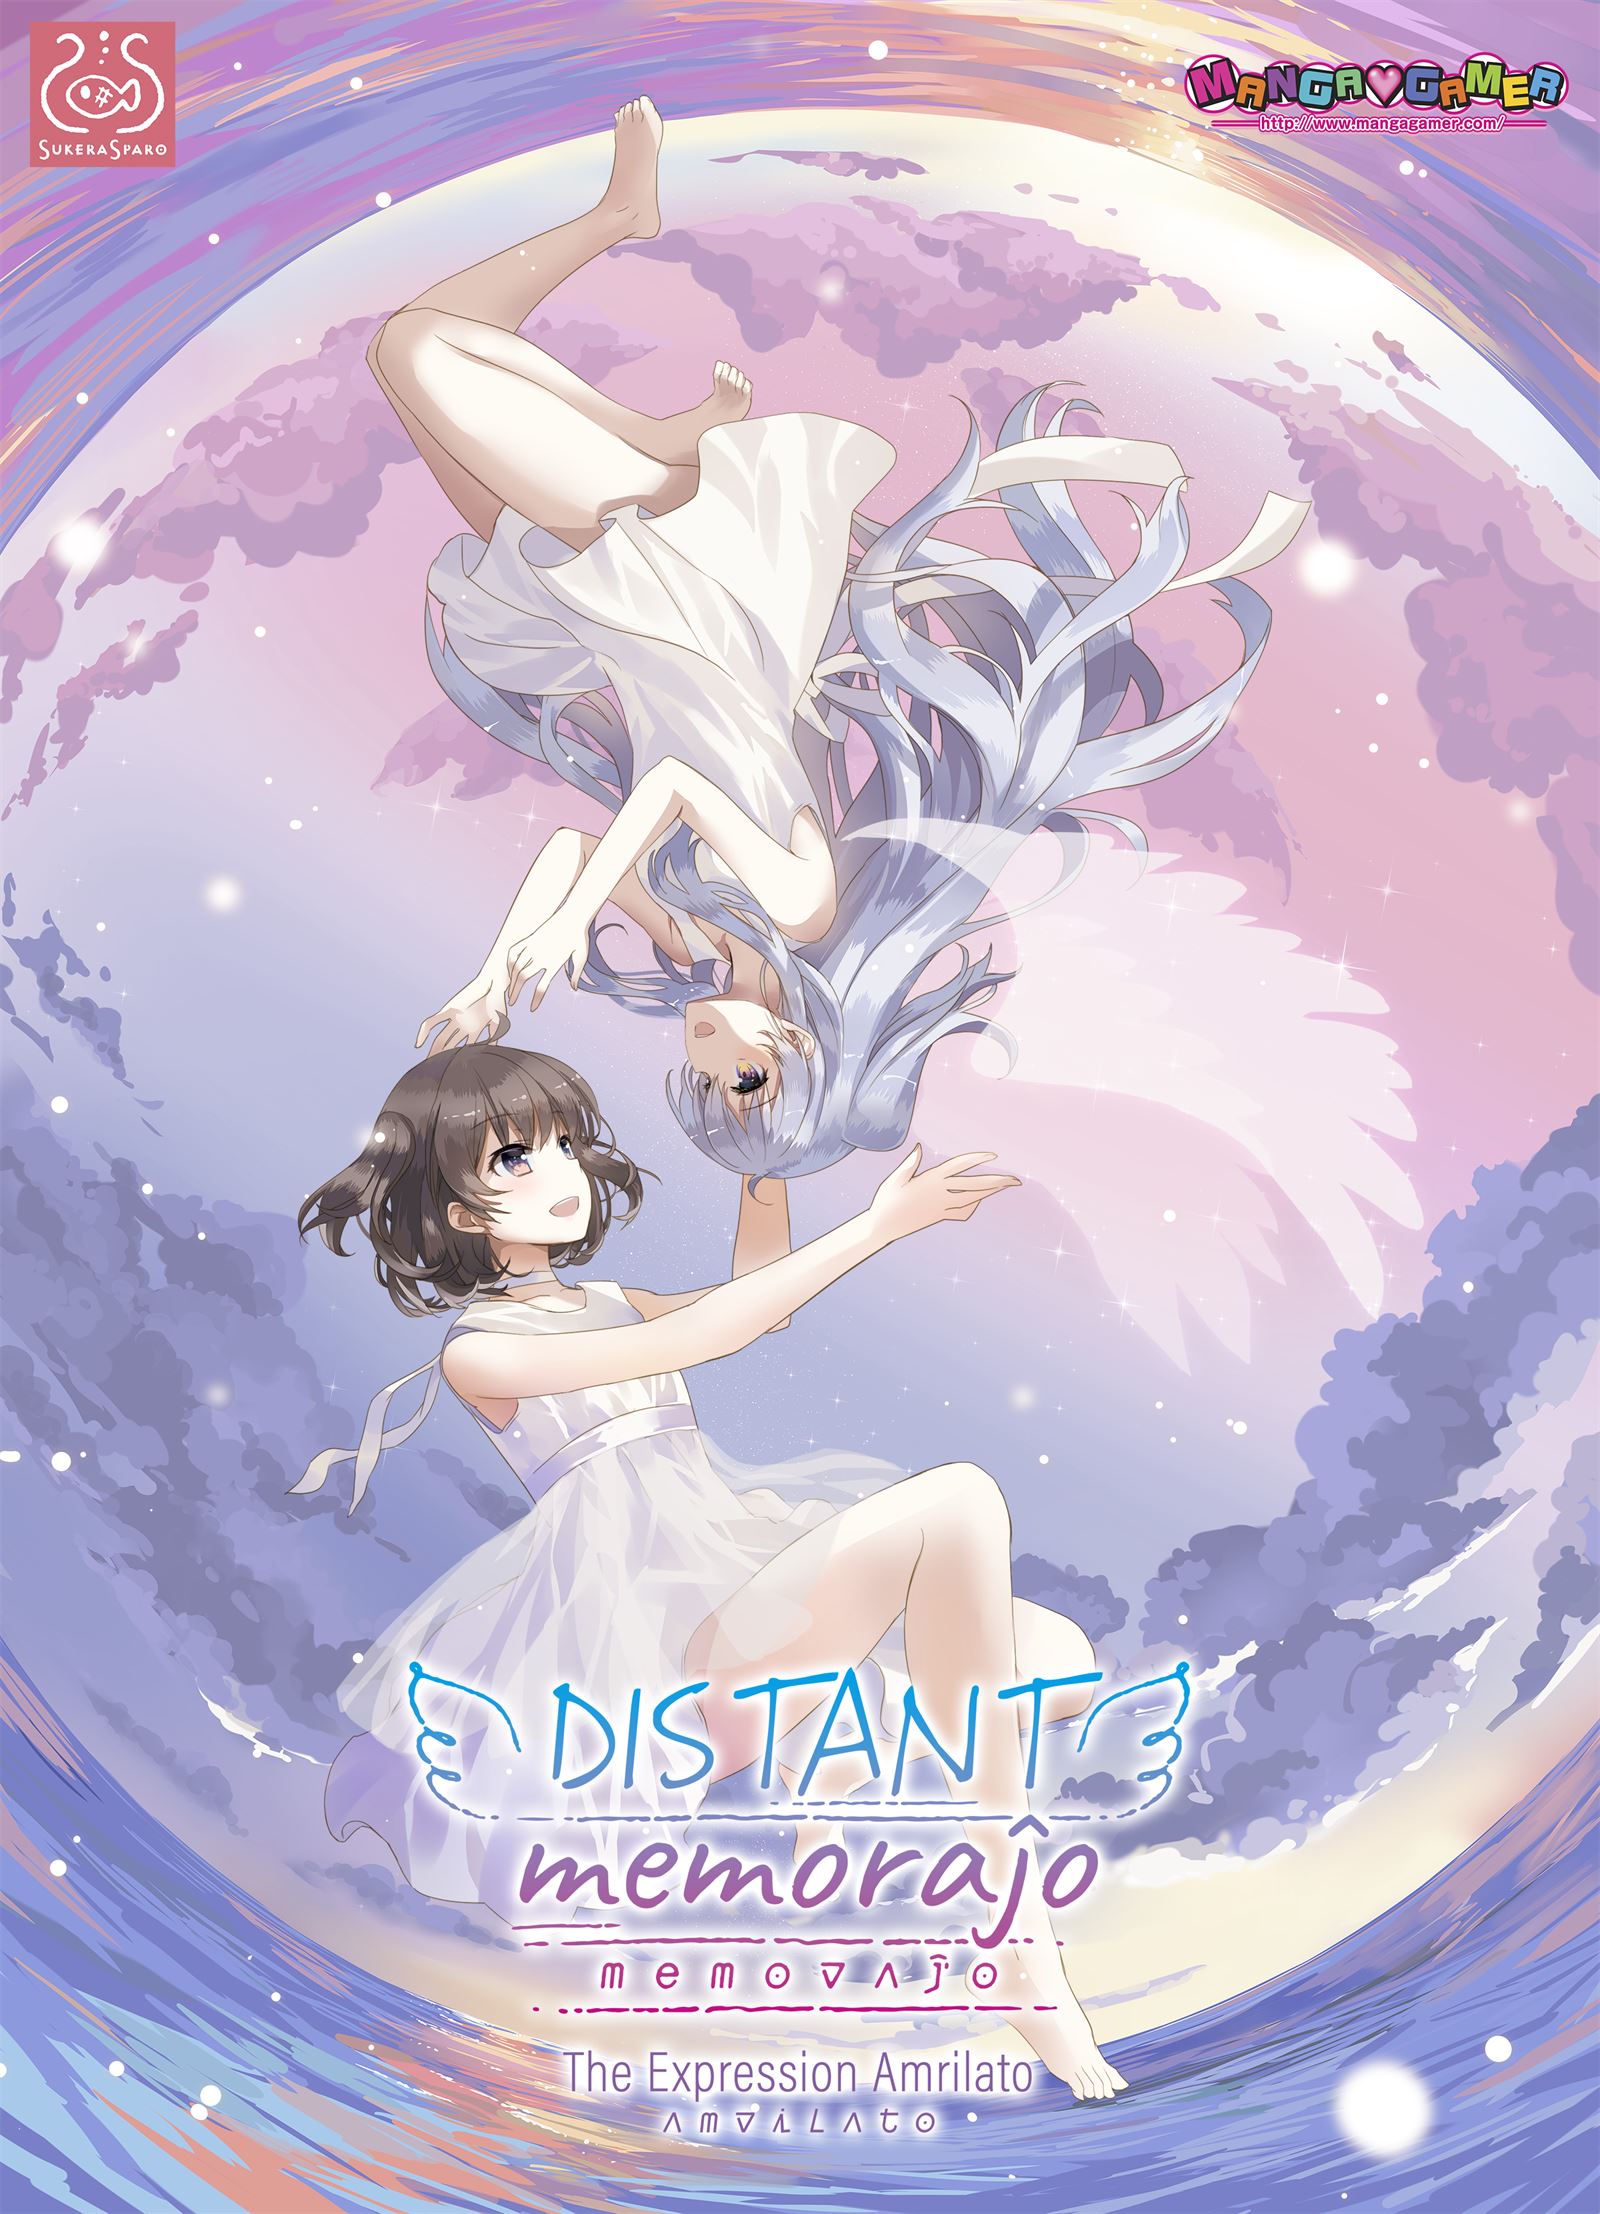 Distant Memoraĵo porn xxx game download cover